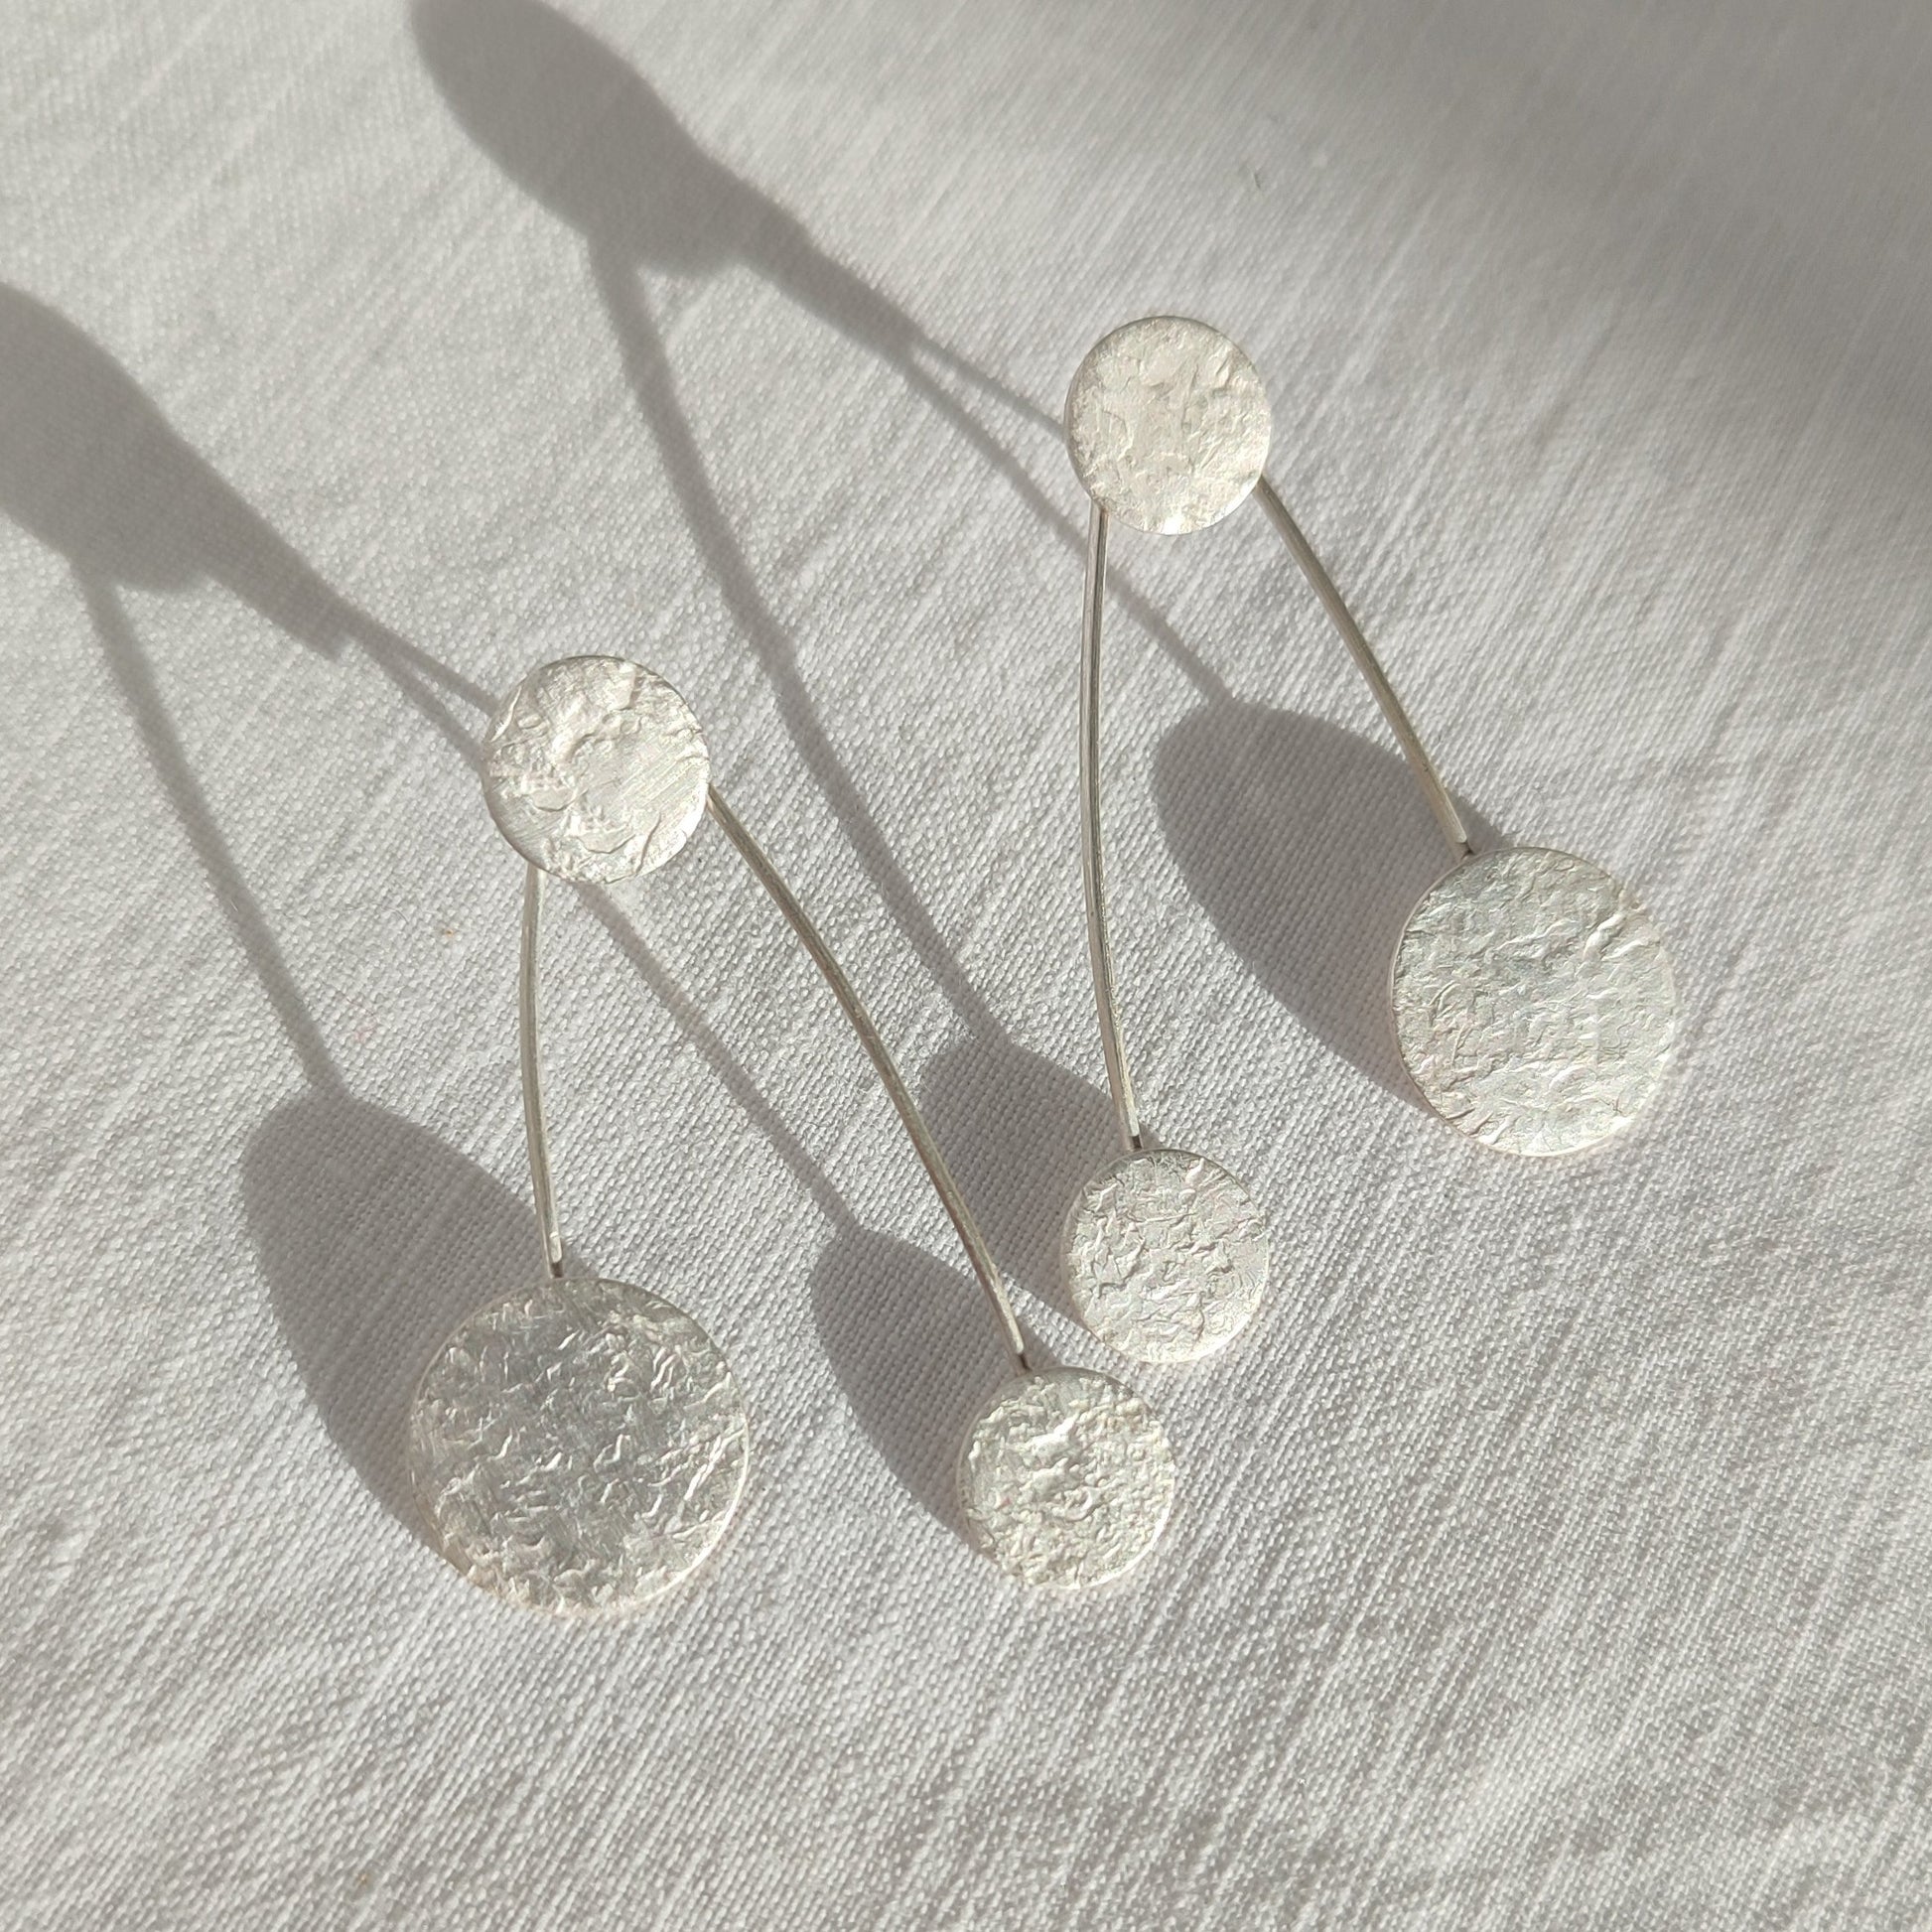 Silver interchangeable earrings